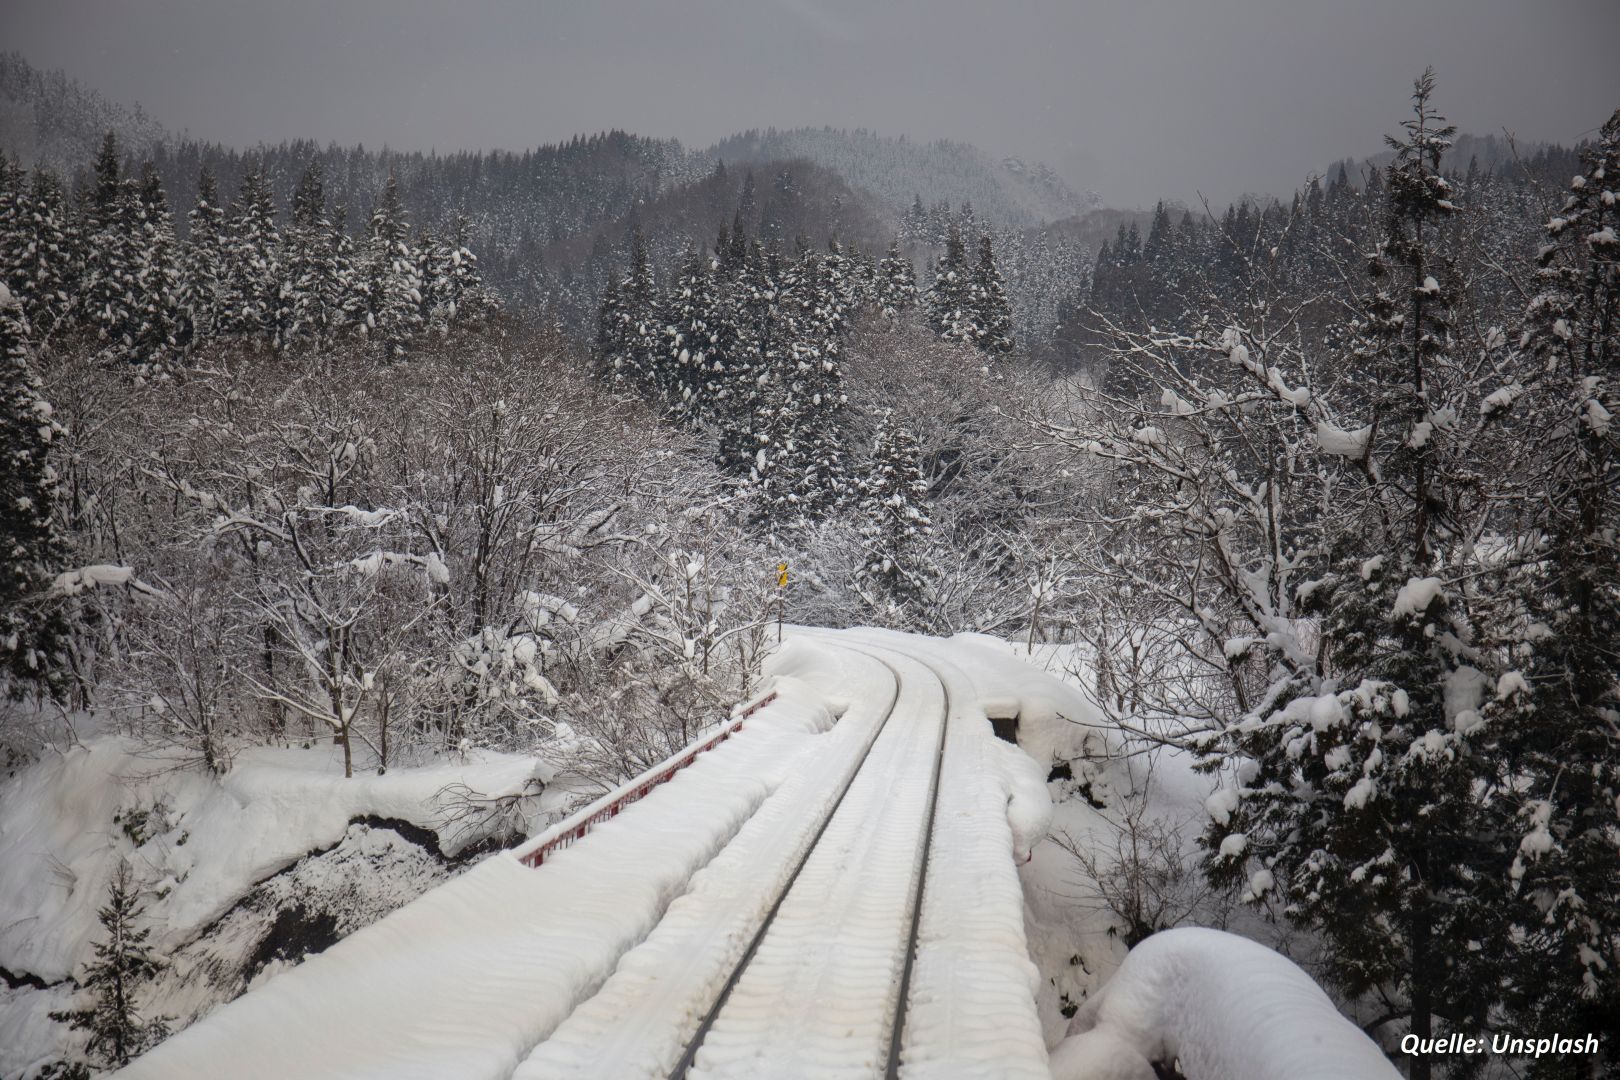 13 Zugpassagiere in Japan aufgrund von Schneefall ins Krankenhaus eingeliefert